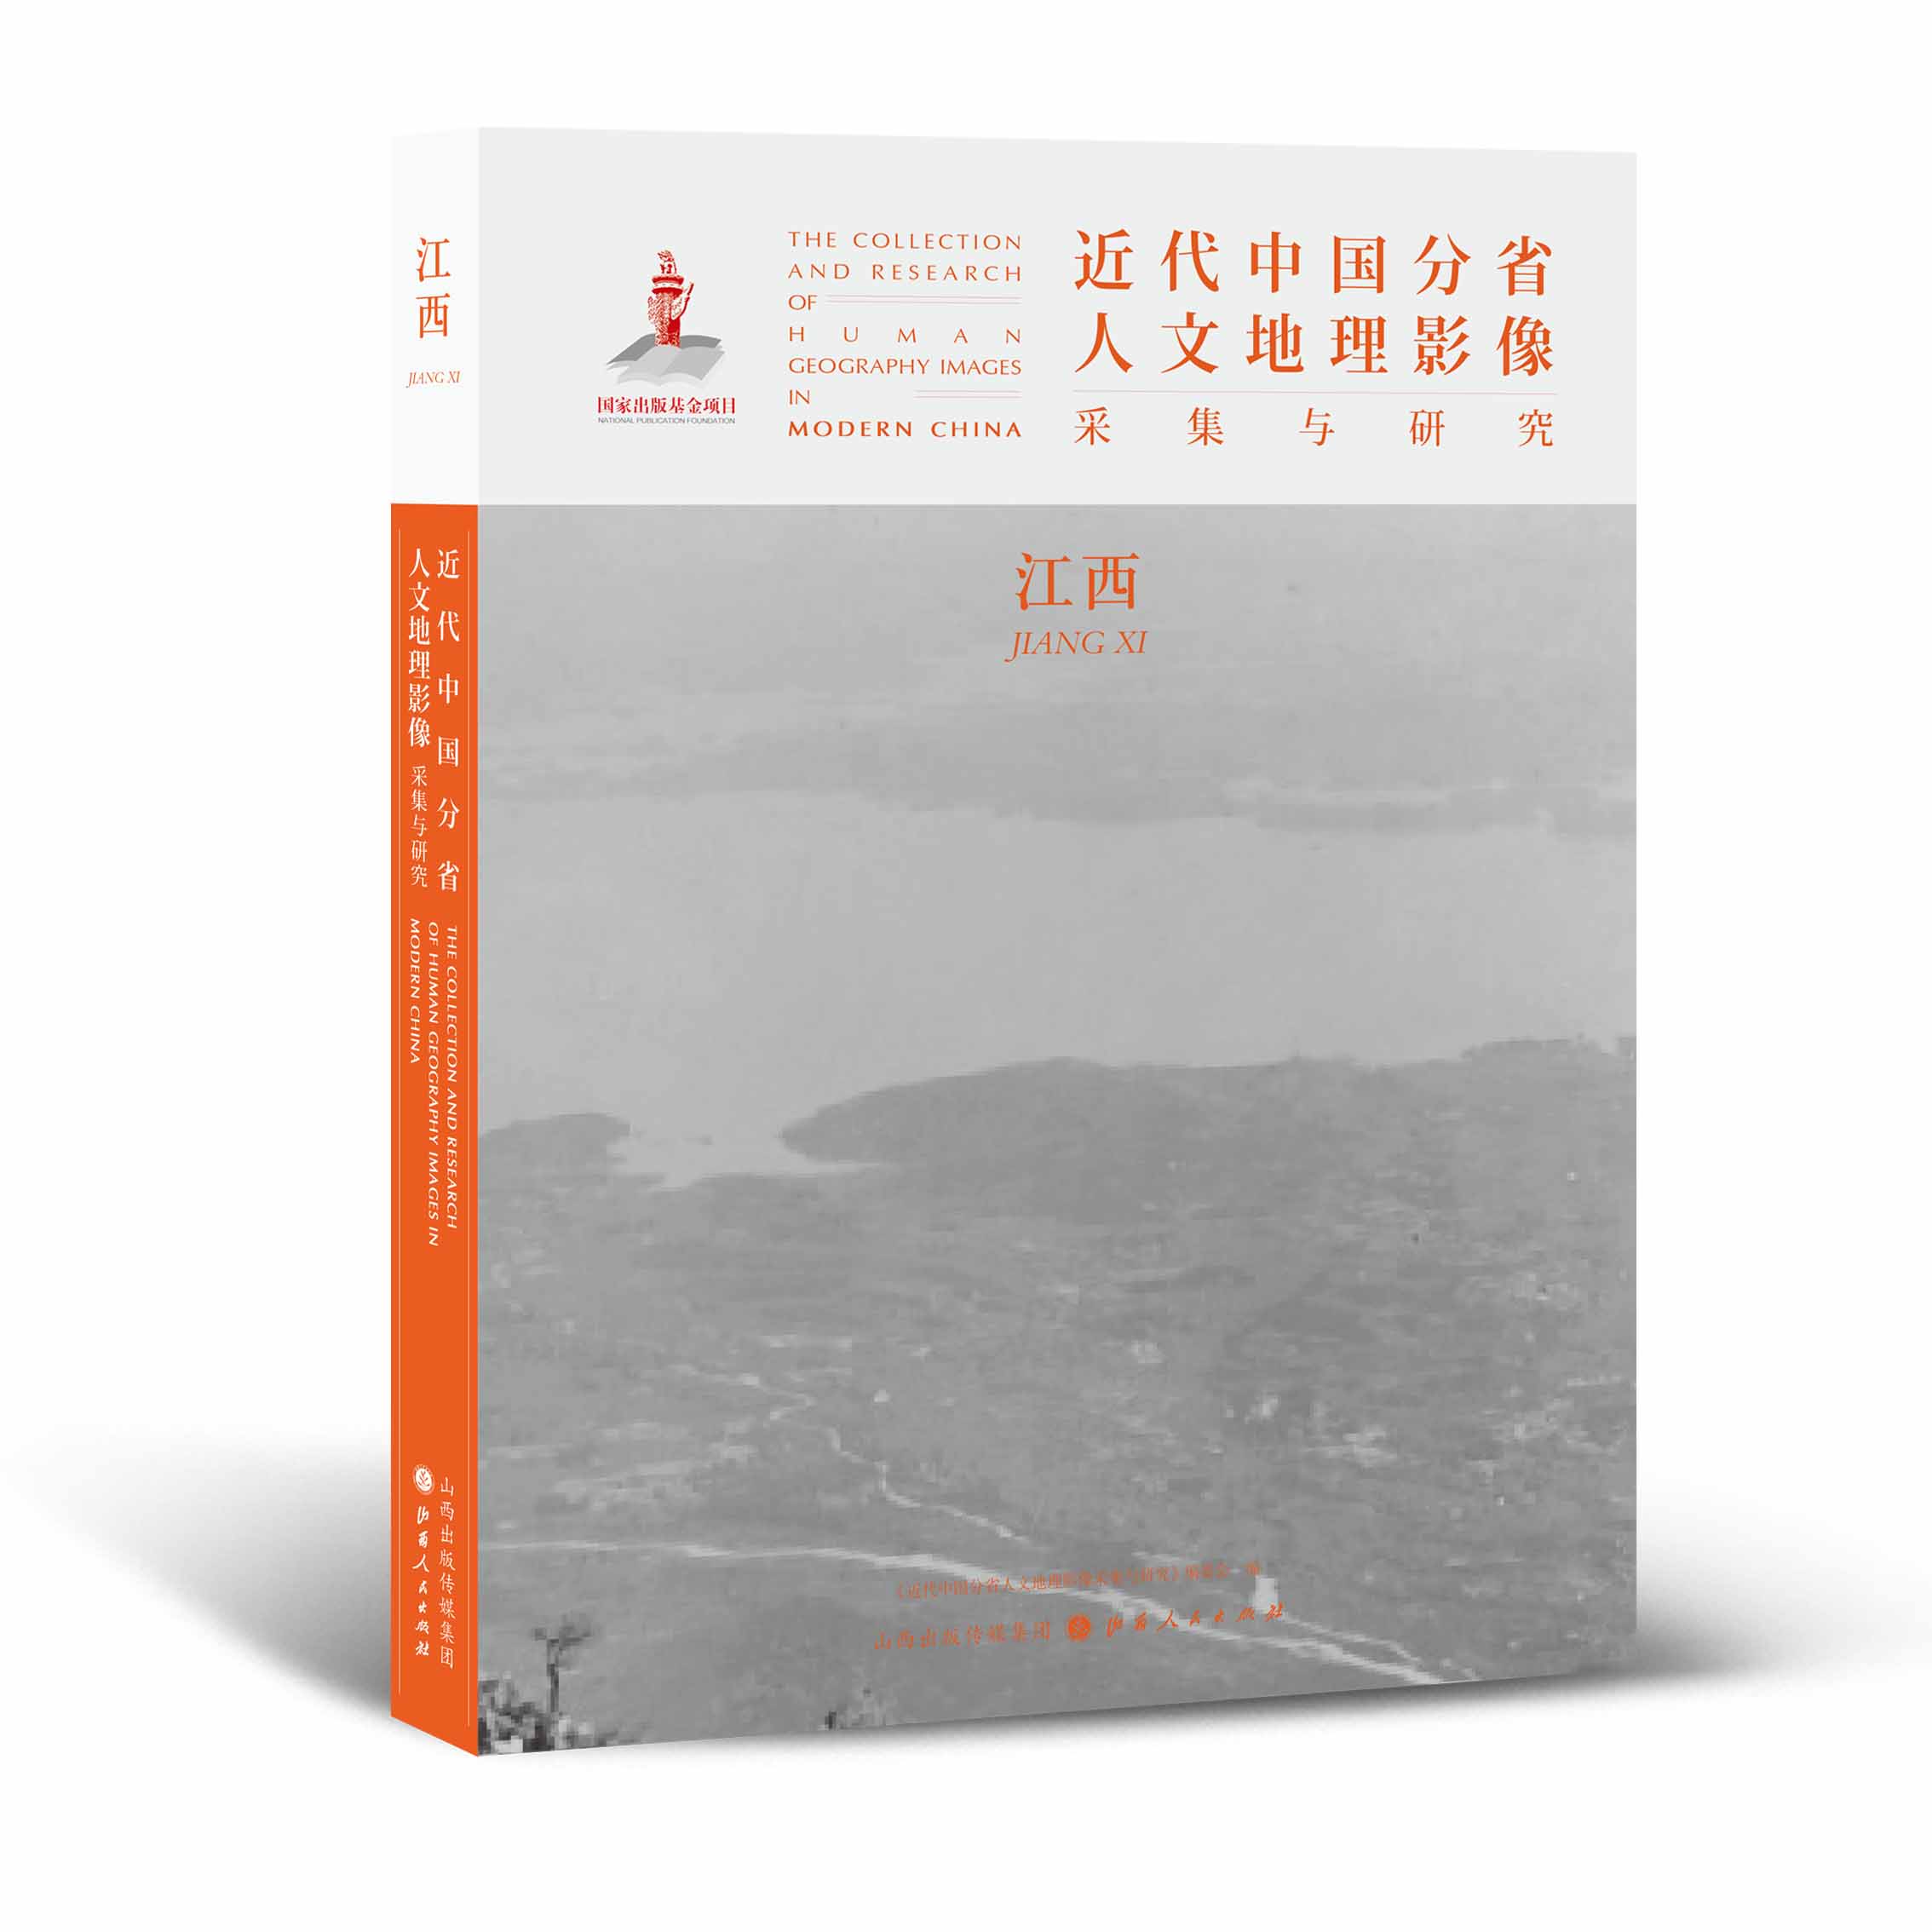 正版包邮 近代中国分省人文地理影像采集与研究 江西 国家出版基金项目 全球采集 用图像读懂中国近代史 近代中国的影像读本